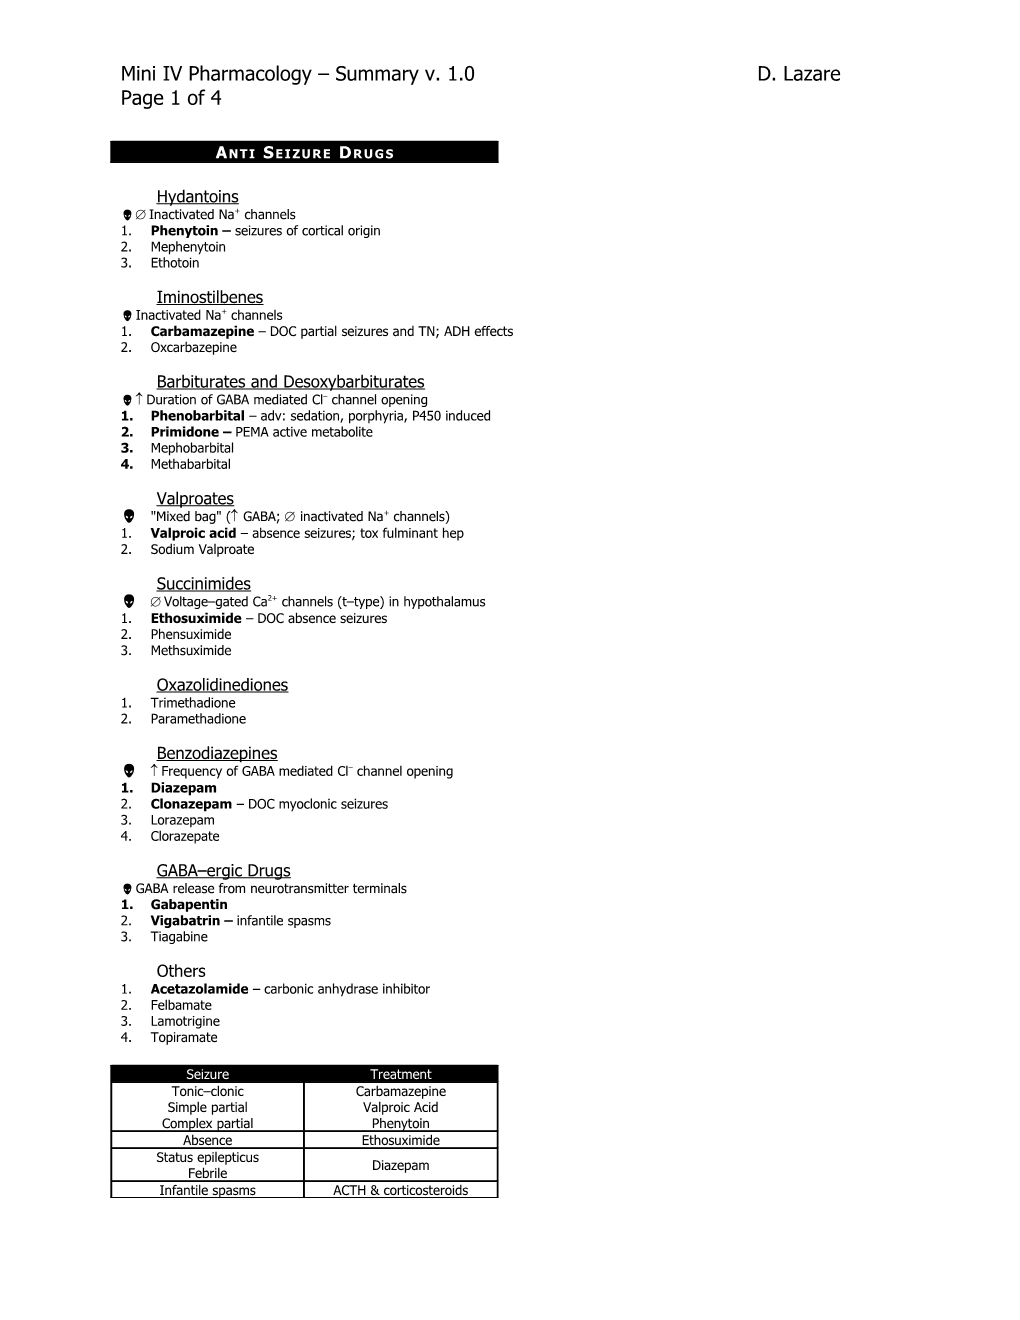 Mini IV Pharmacology Summary V. 1.0 D. Lazare